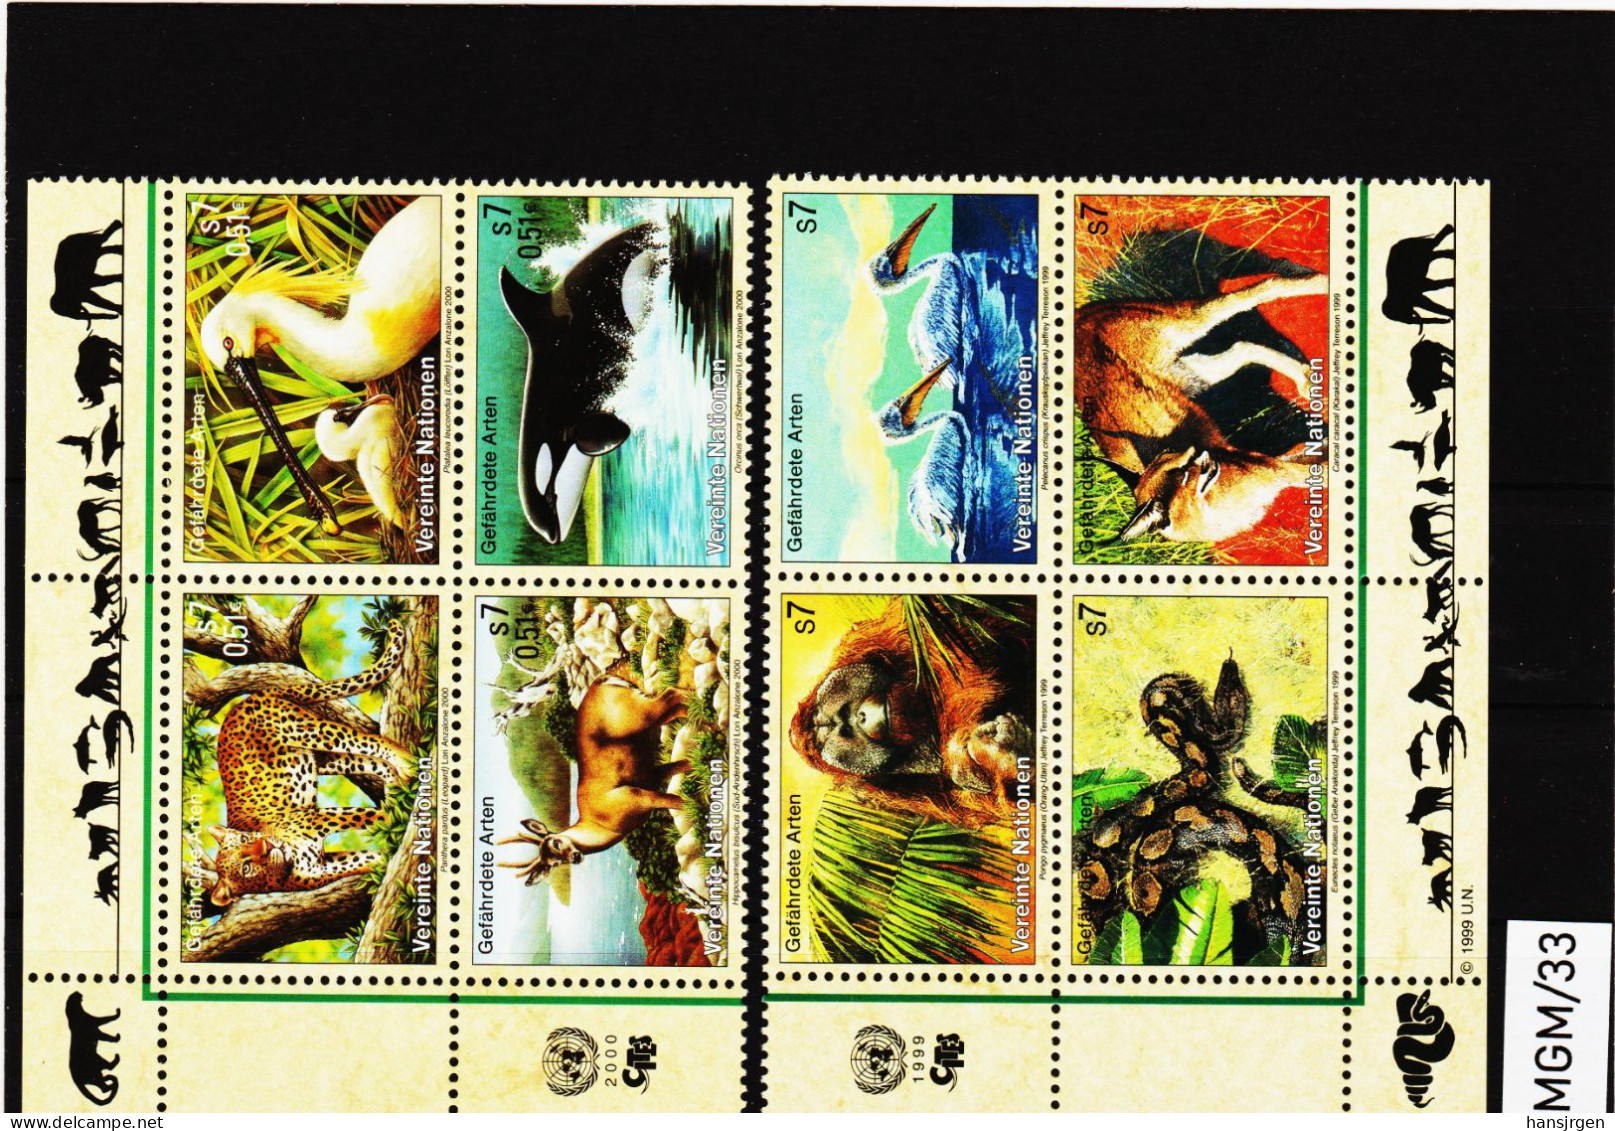 IMGM/33 VEREINTE NATIONEN UNO WIEN 1999/00  MICHL  287/90 + 303/06 VIERERBLOCK ** Postfrisch Siehe ABBILBUNG - Unused Stamps